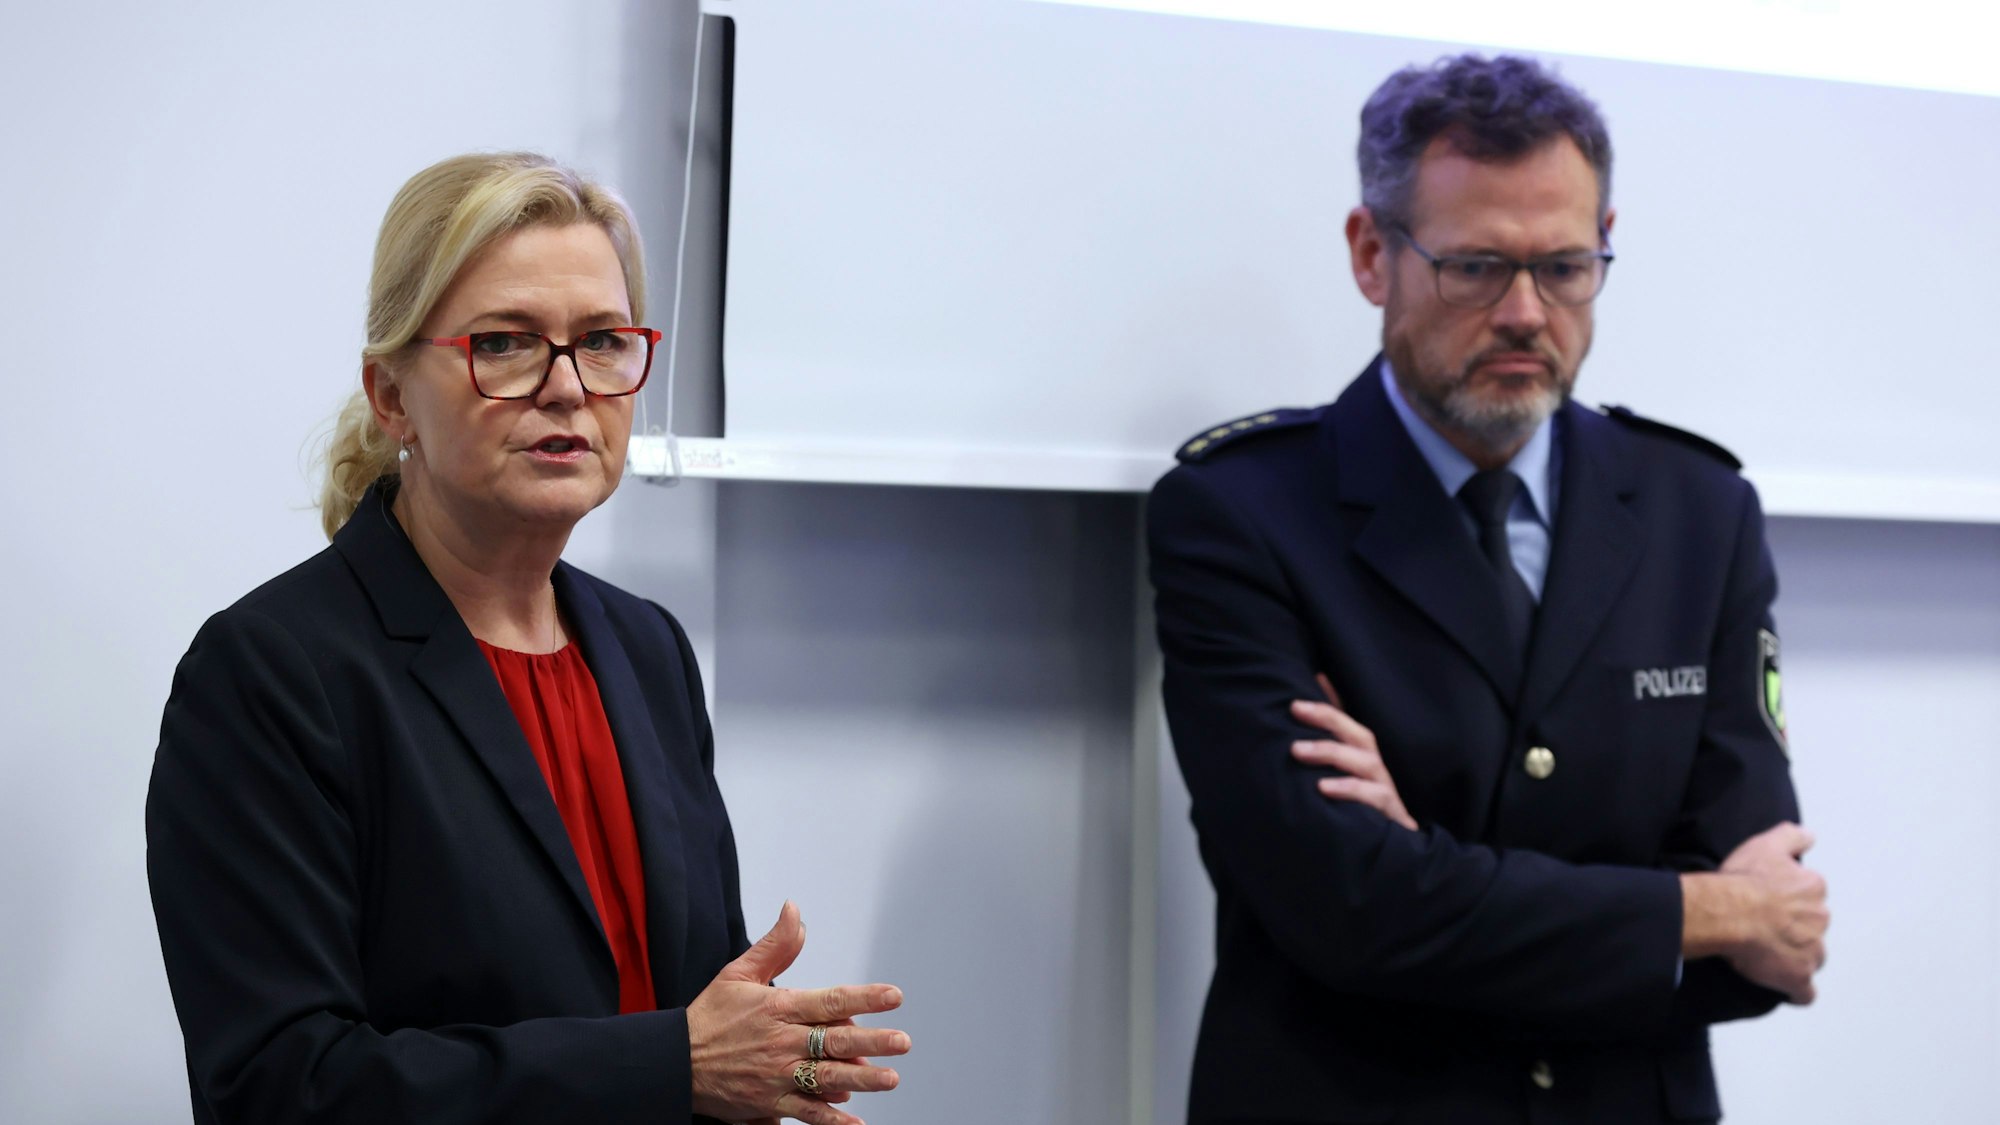 Miriam Brauns, stellvertretende Kölner Polizeipräsidentin, und Einsatzleiter Frank Wißbaum stehen unter einer Leinwand, auf der die Präsentation für den Einsatz gezeigt wird.